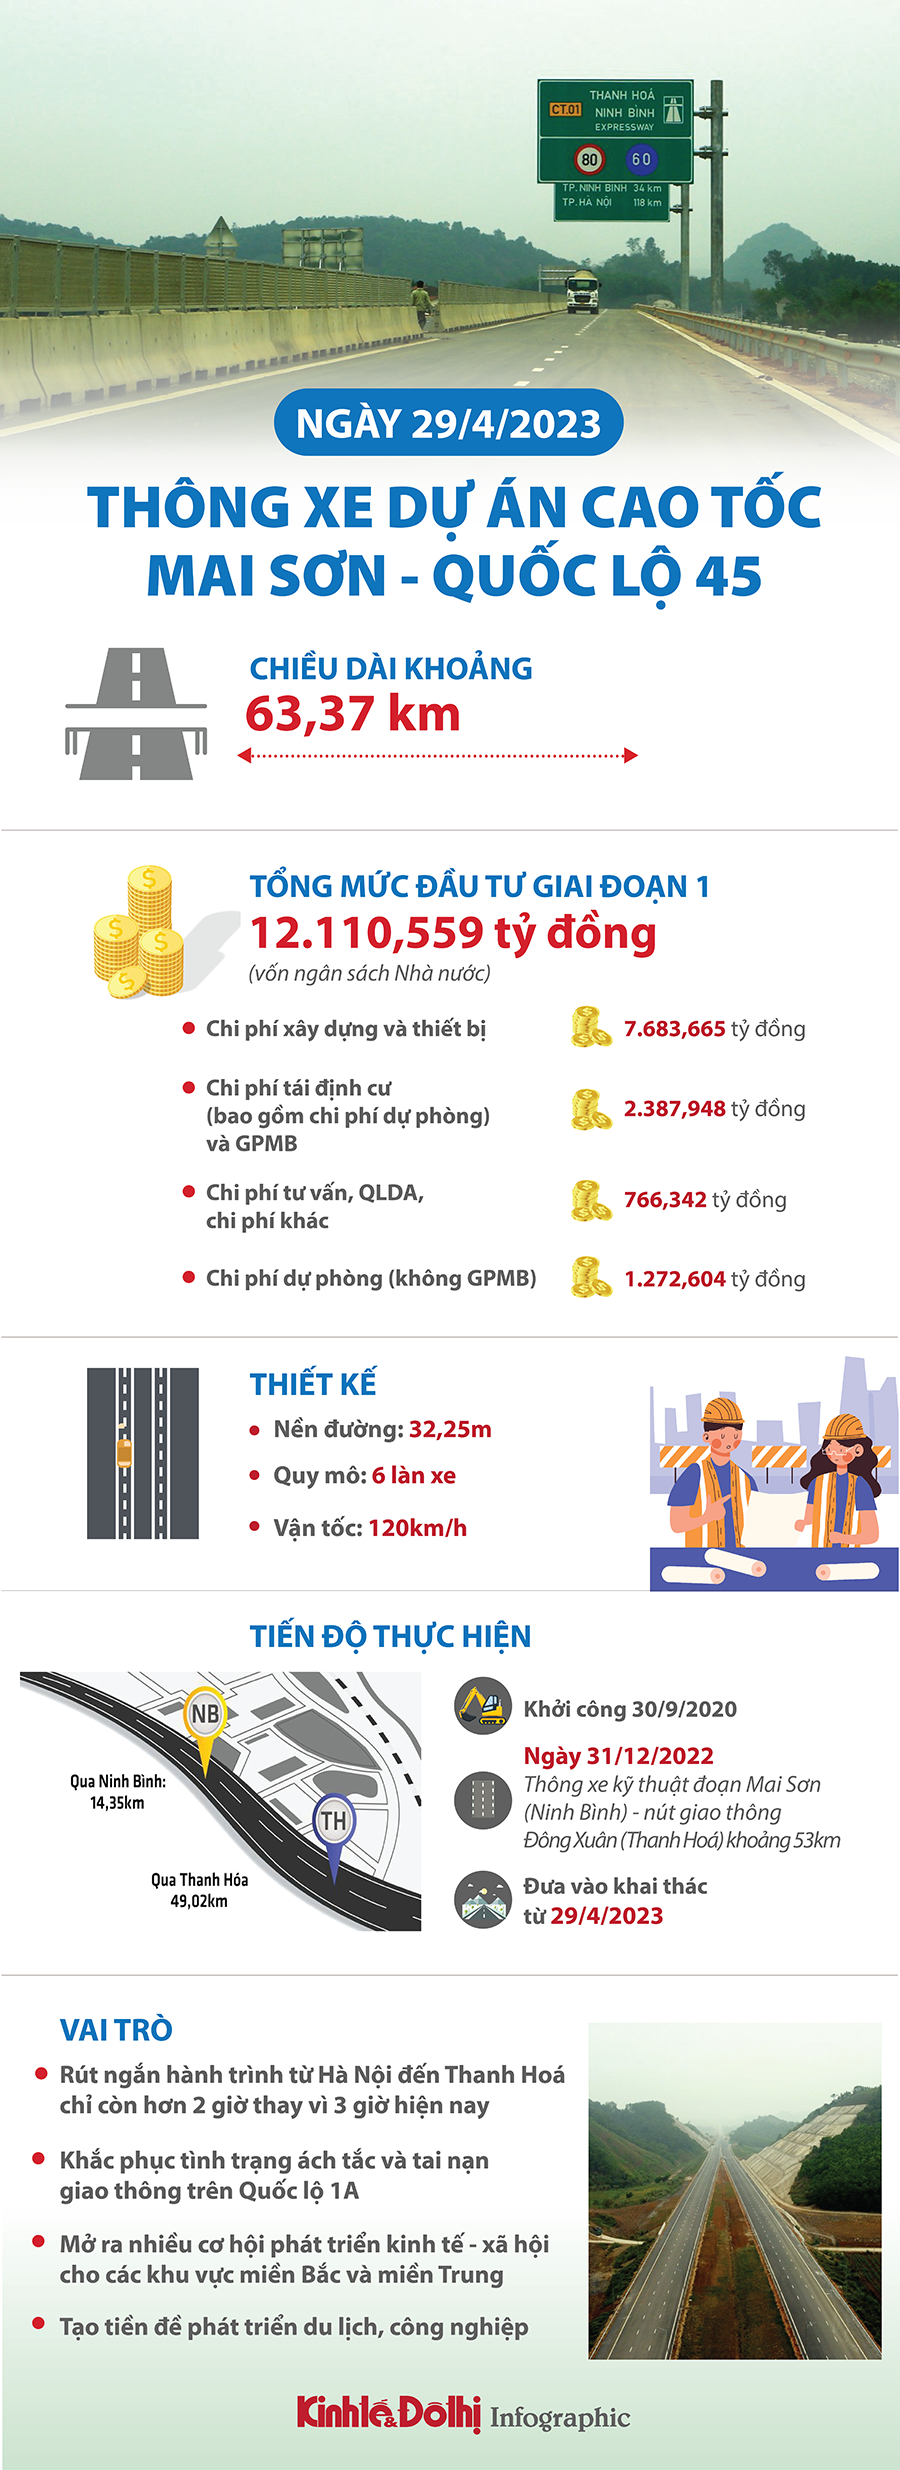 Cao tốc Mai Sơn - Quốc lộ 45 dự kiến thông xe ngày 29/4 - Ảnh 1